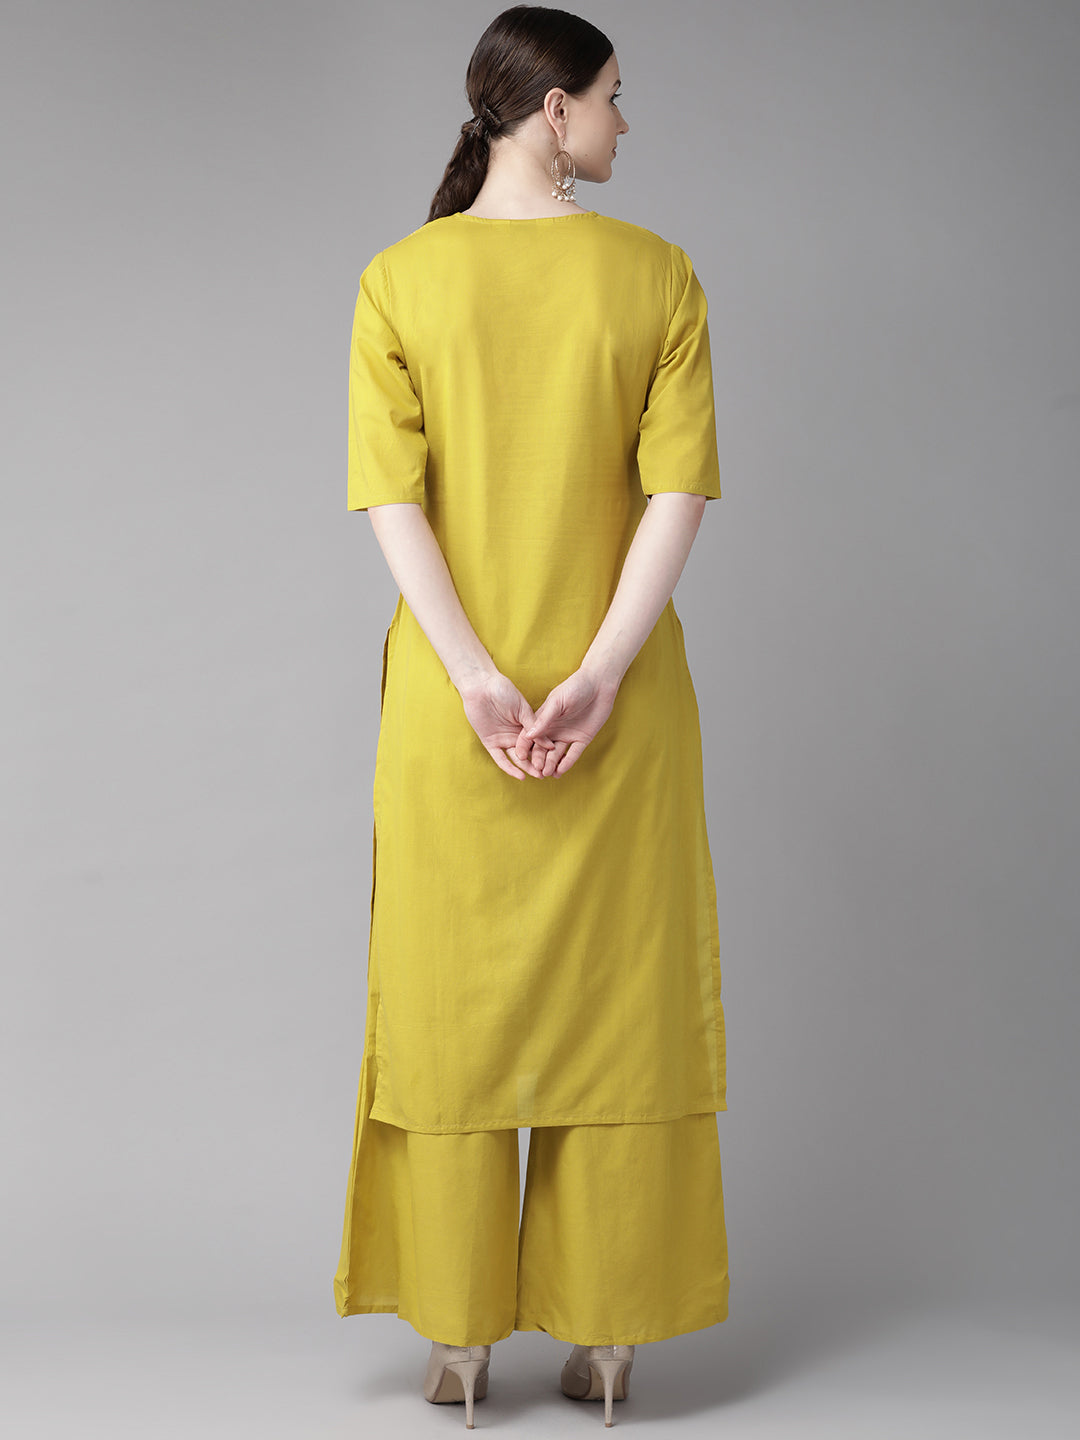 Bhama Couture Women Mustard Yellow & Off-White Block Printed Kurta with Palazzos